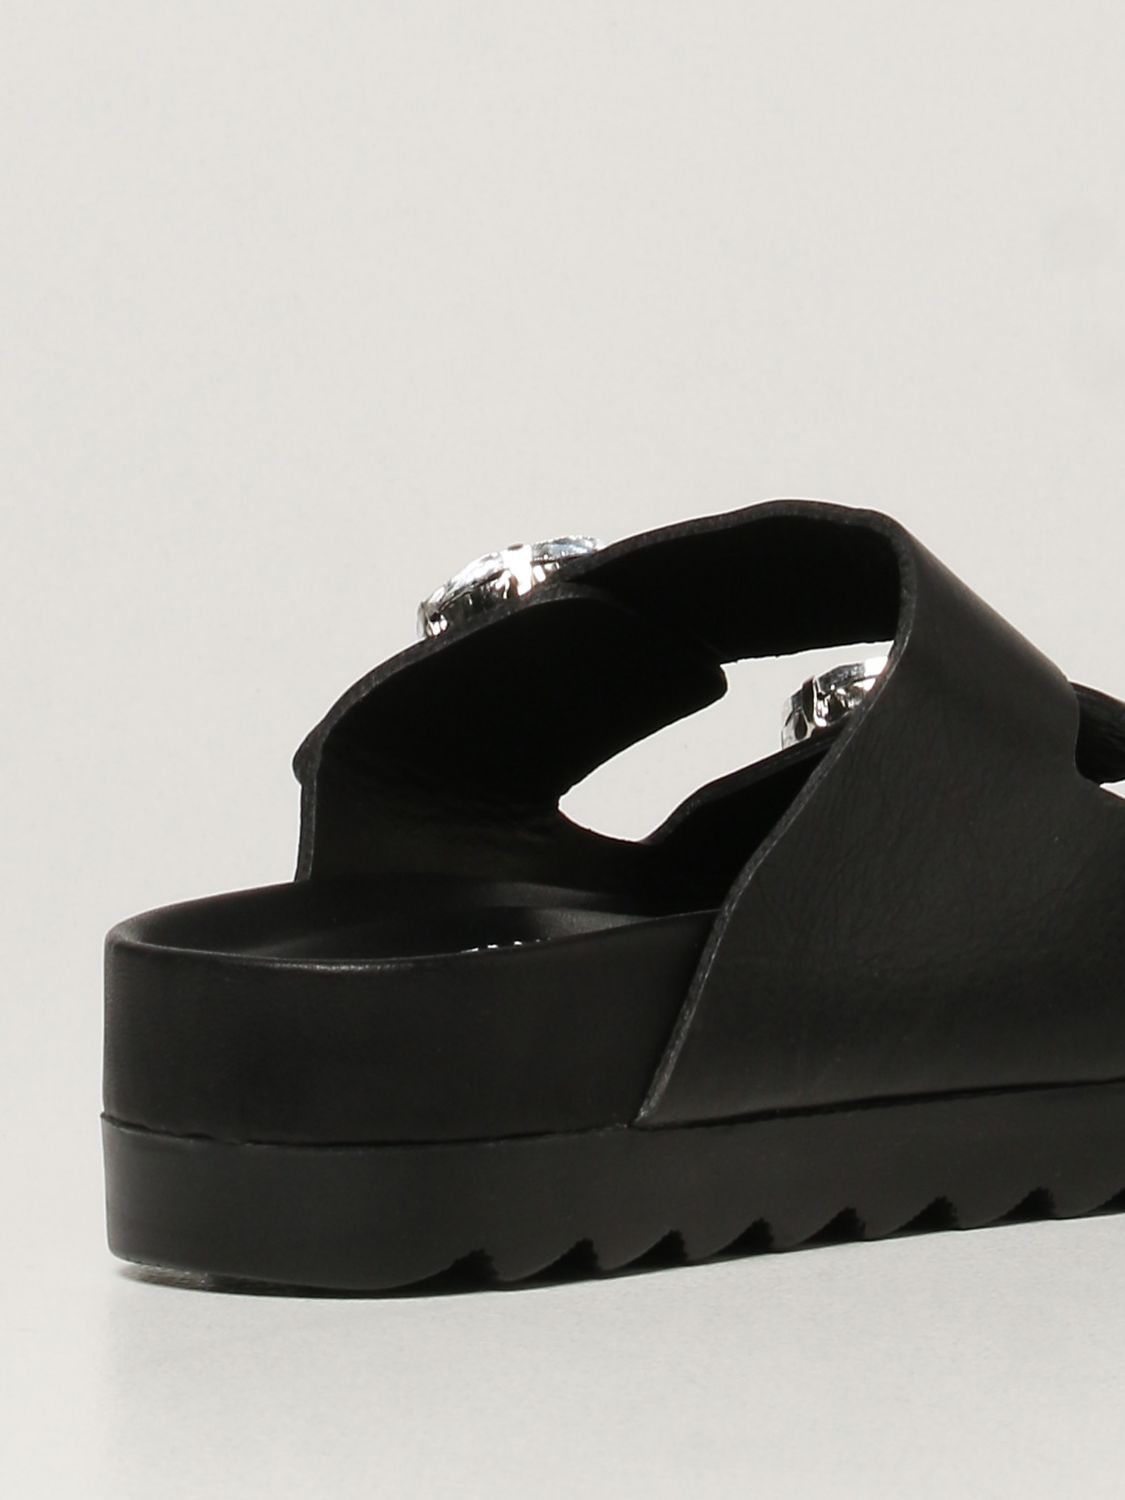 Sandales plates Inspiration Concrete: Chaussures femme Inspiration Concrete noir 3